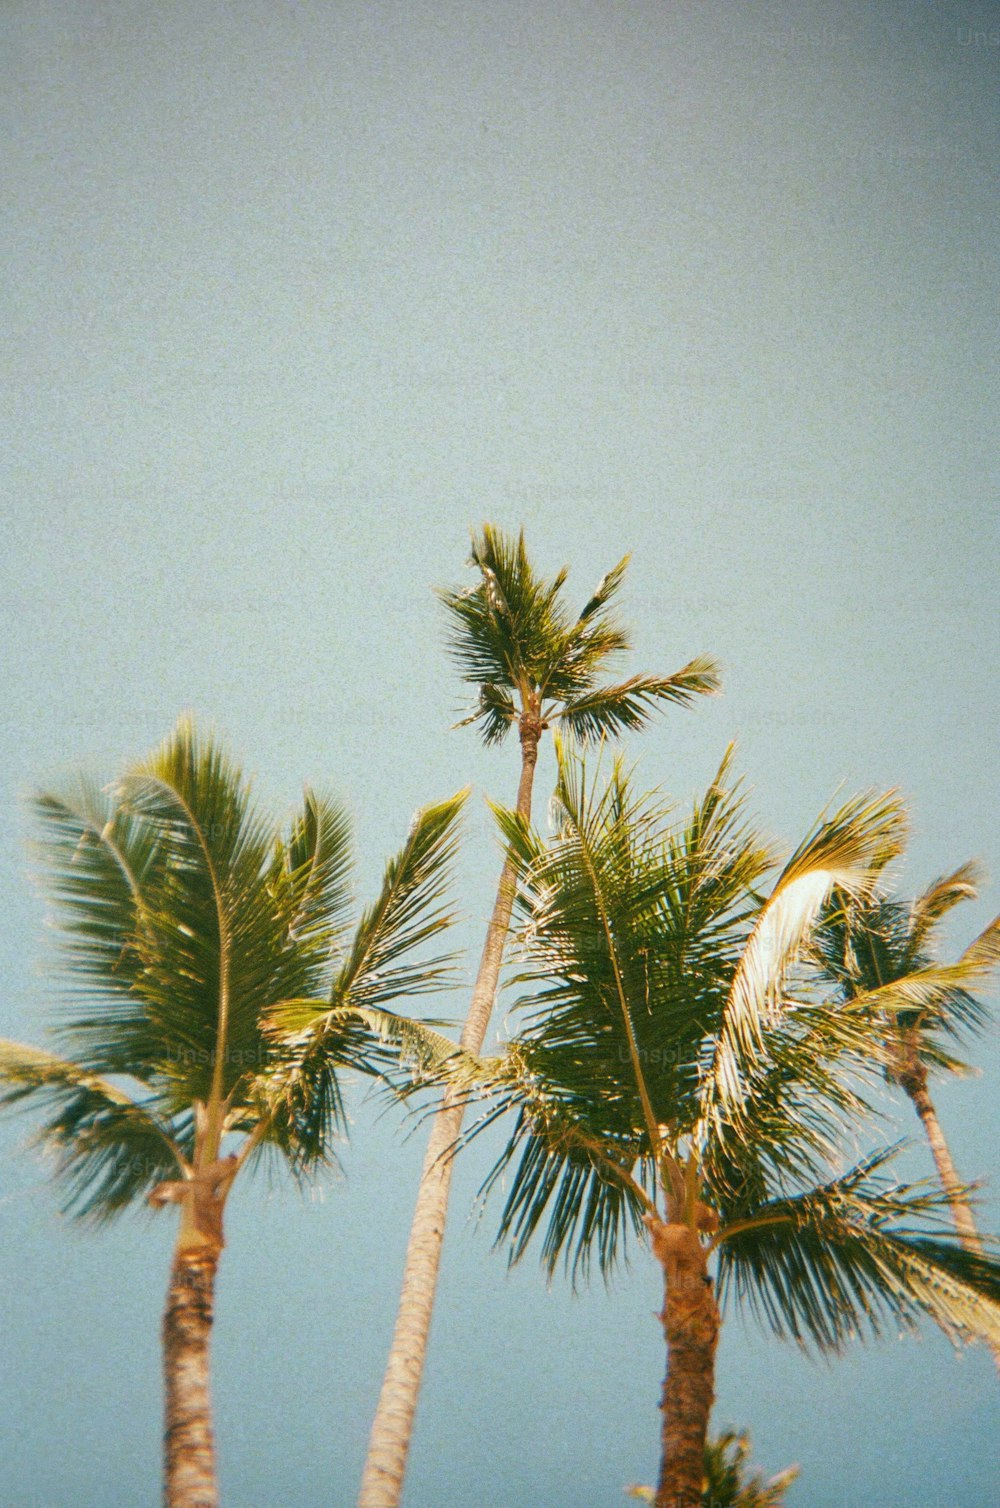 um grupo de palmeiras com um céu azul no fundo